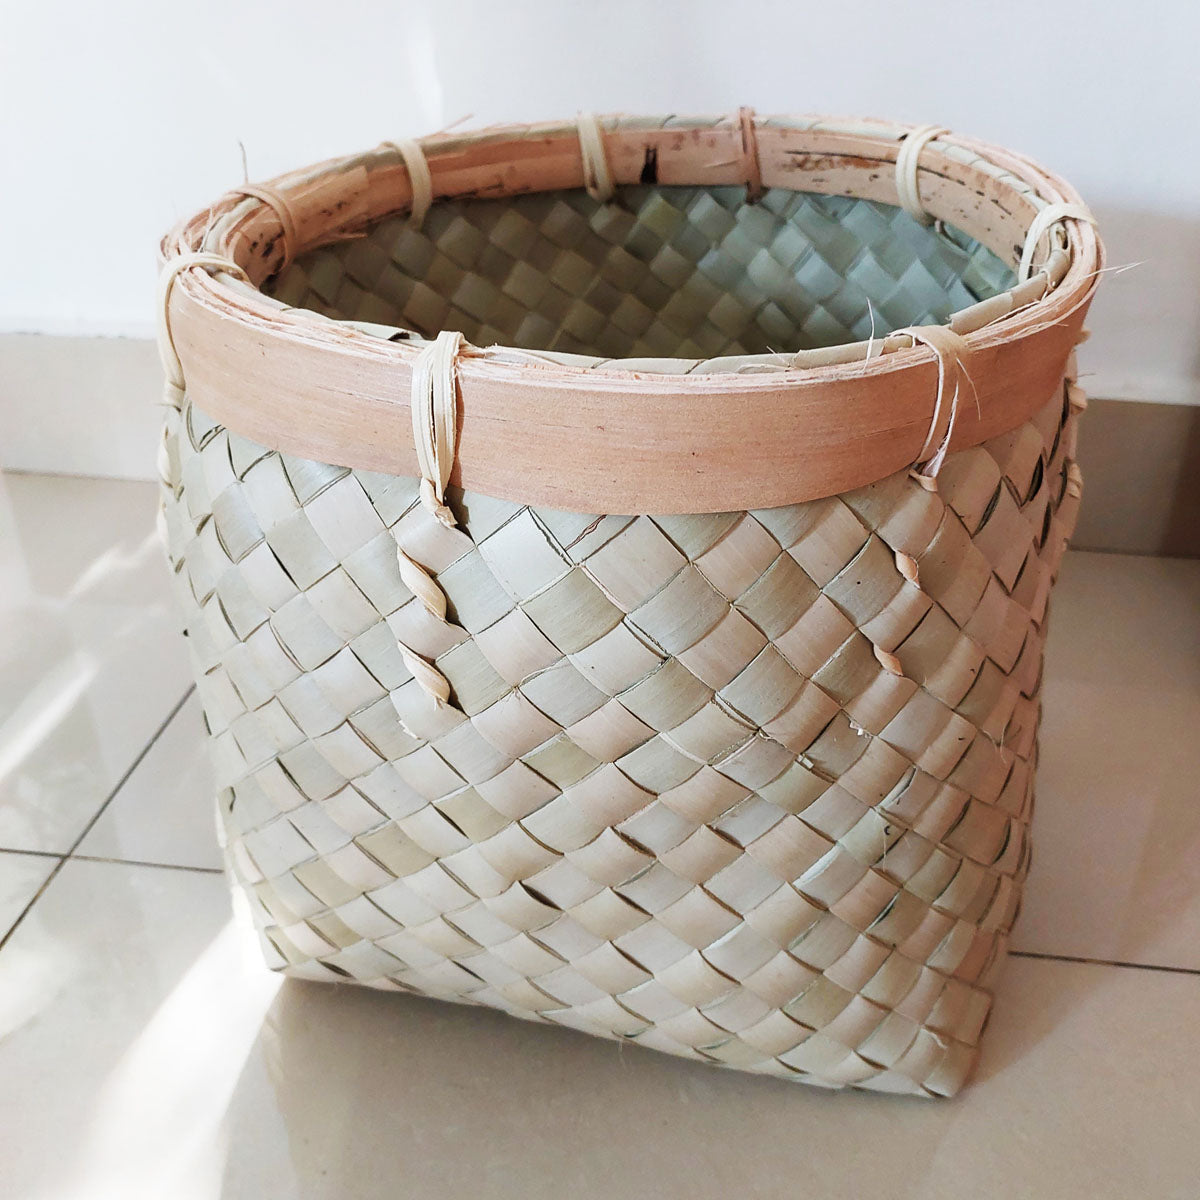 Wicker/seagrass/straw basket